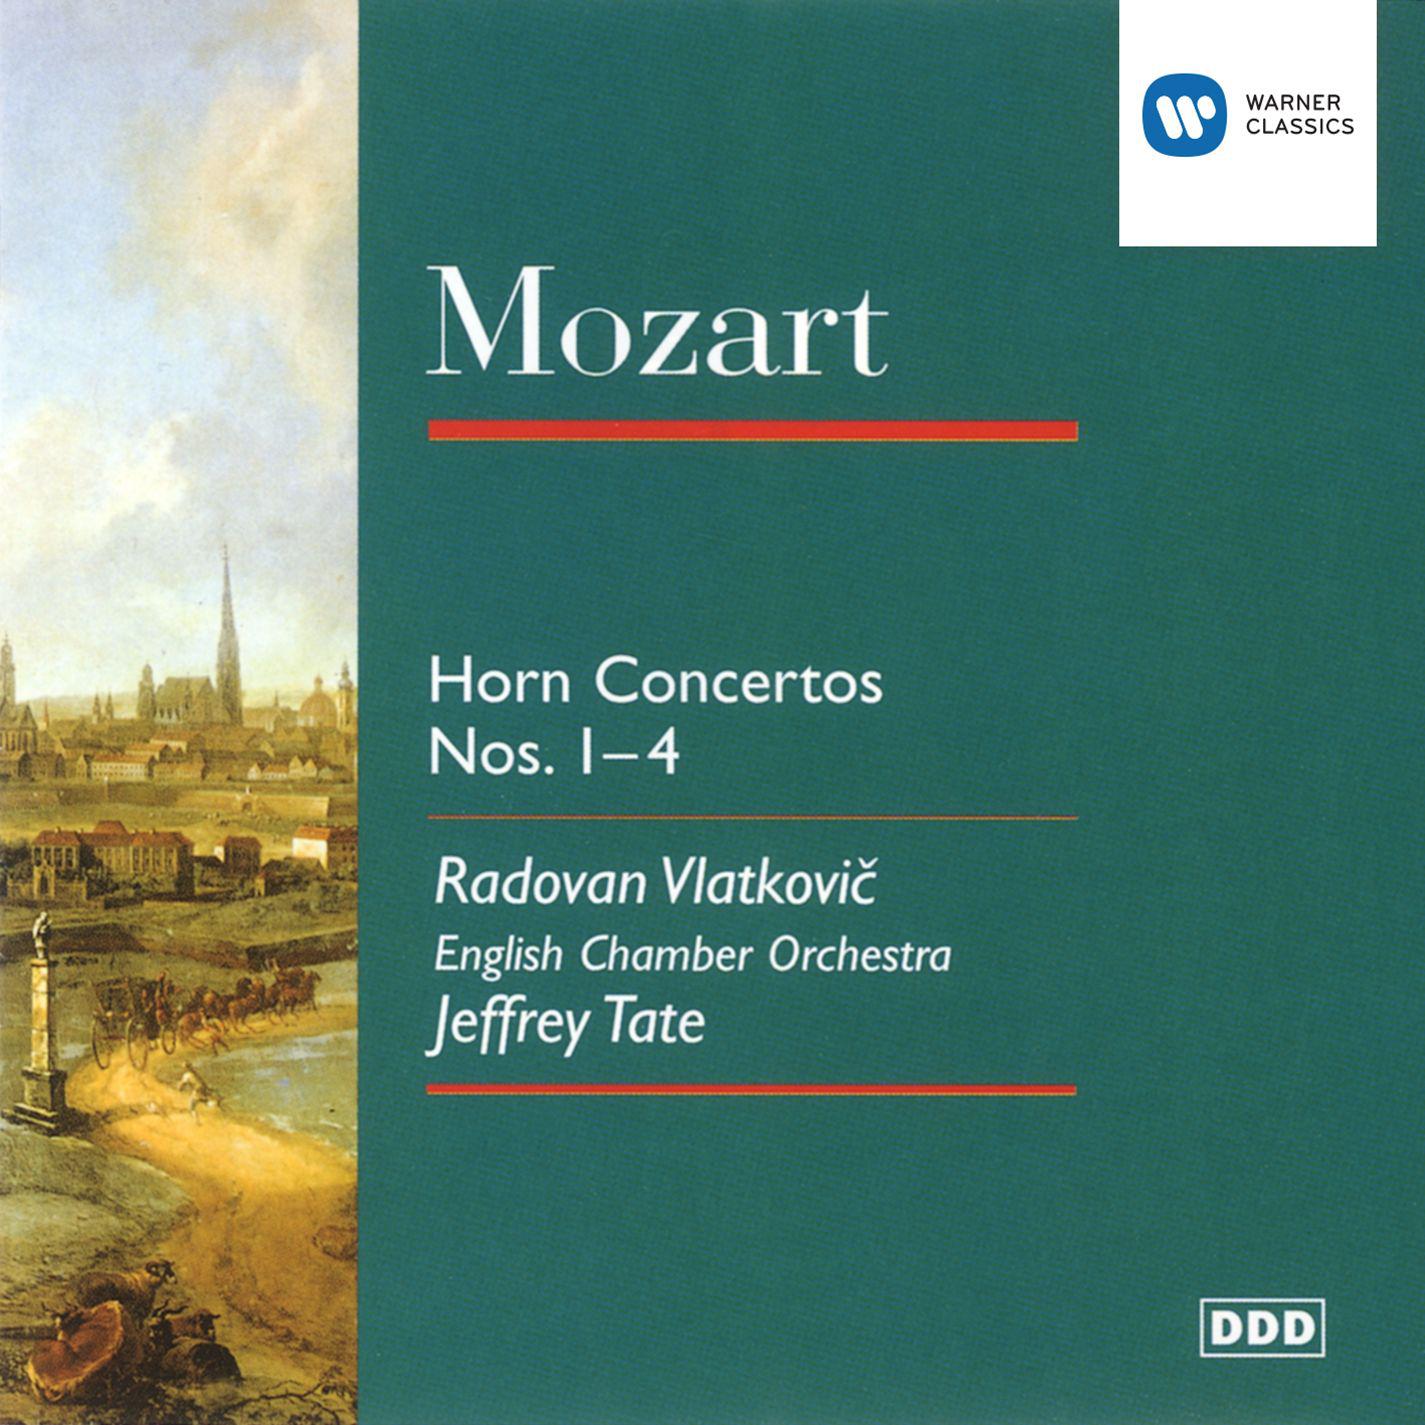 Horn Concerto No. 3 in E flat K447: II. Romanza - Larghetto